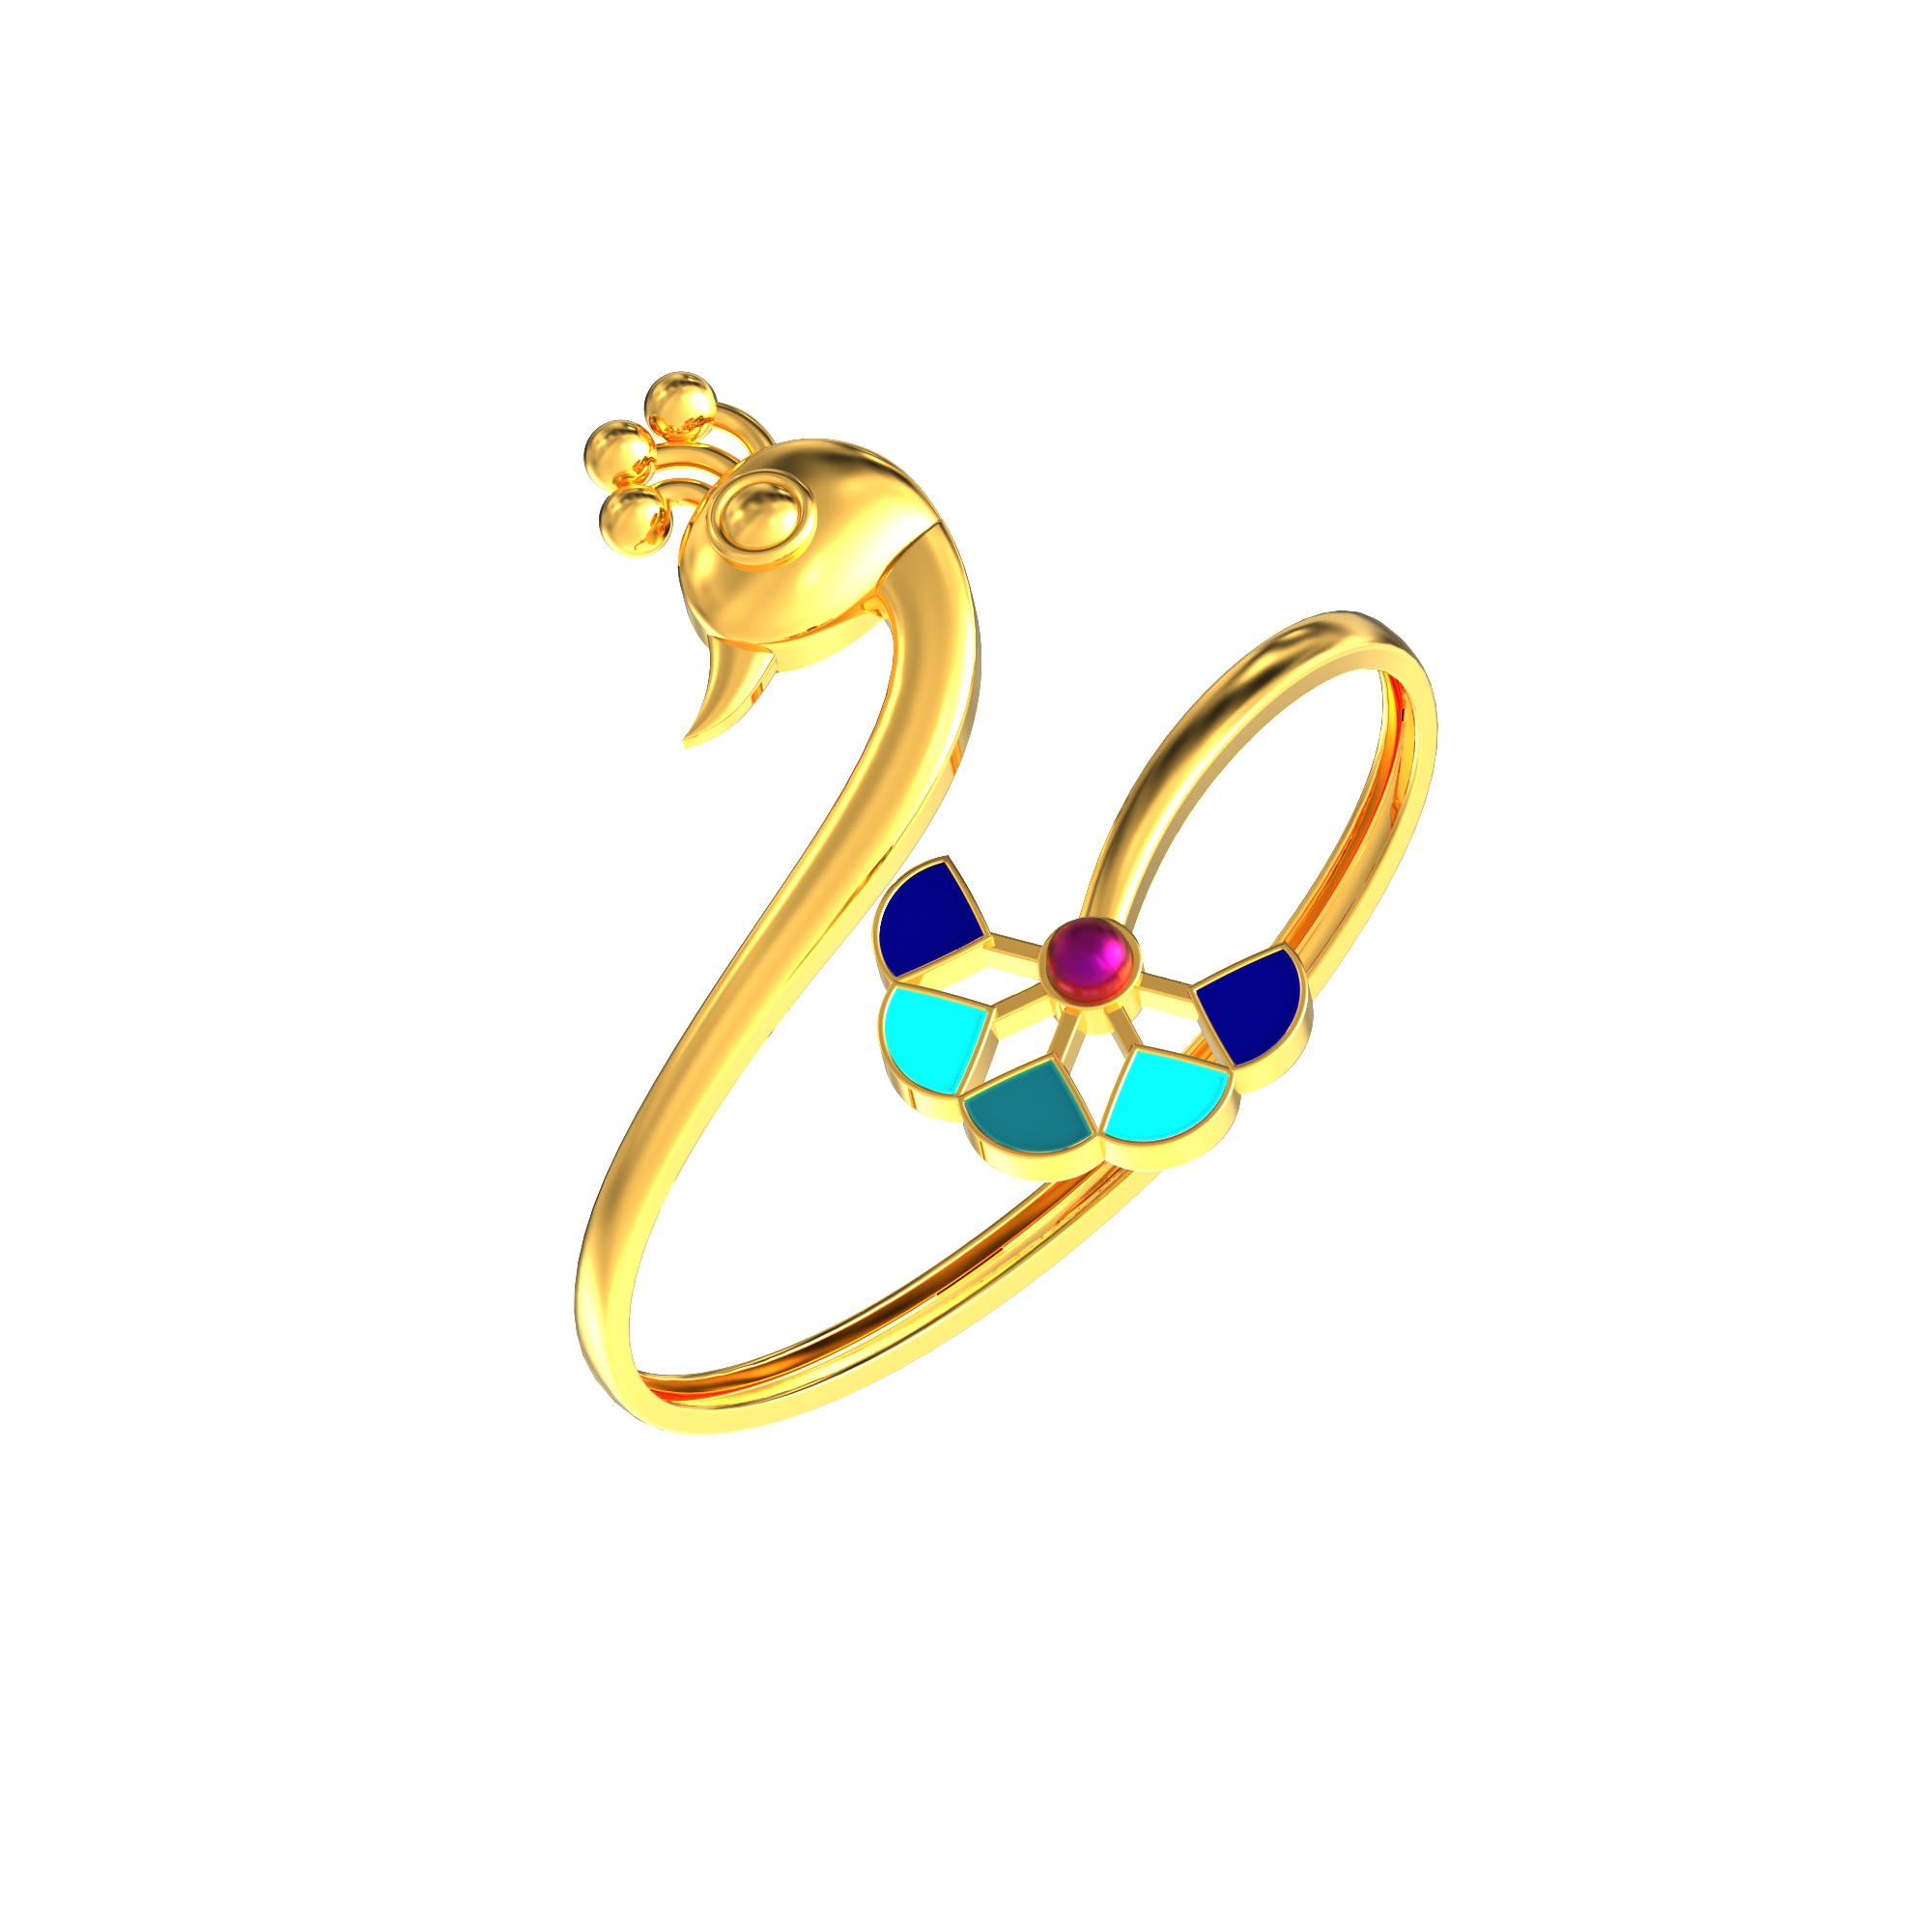 Peacock Design Gold Bracelet for Women